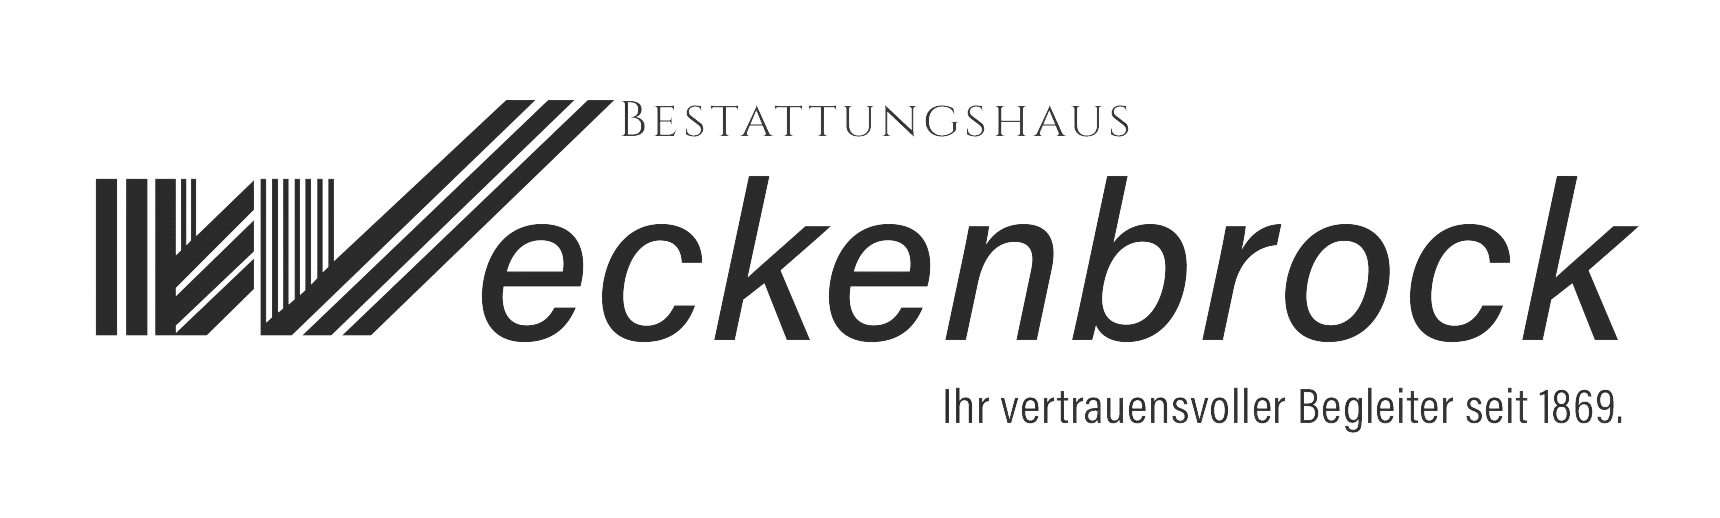 relaunch bestweckenbrock logo finale removebg